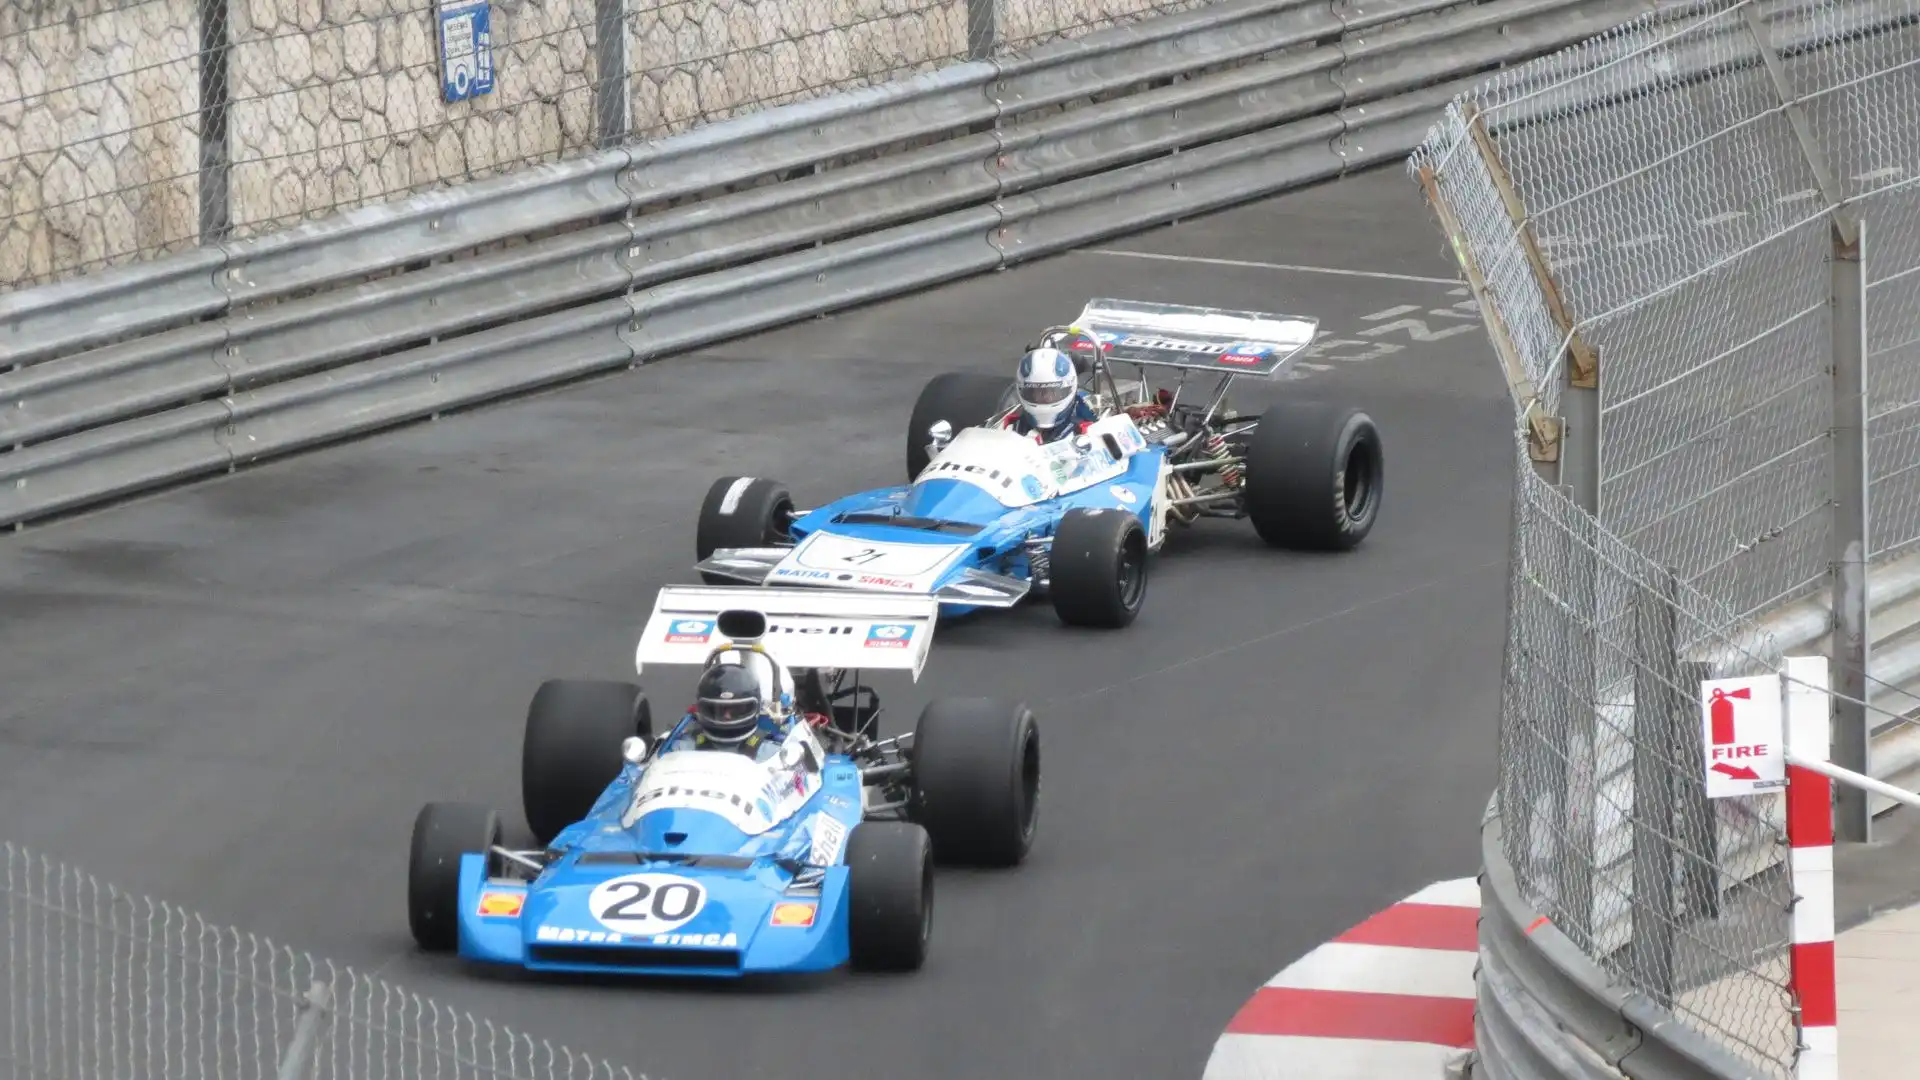 Un fulmine bianco e azzurro sulle piste di Formula 1 (ph. Moreno Galimberti)